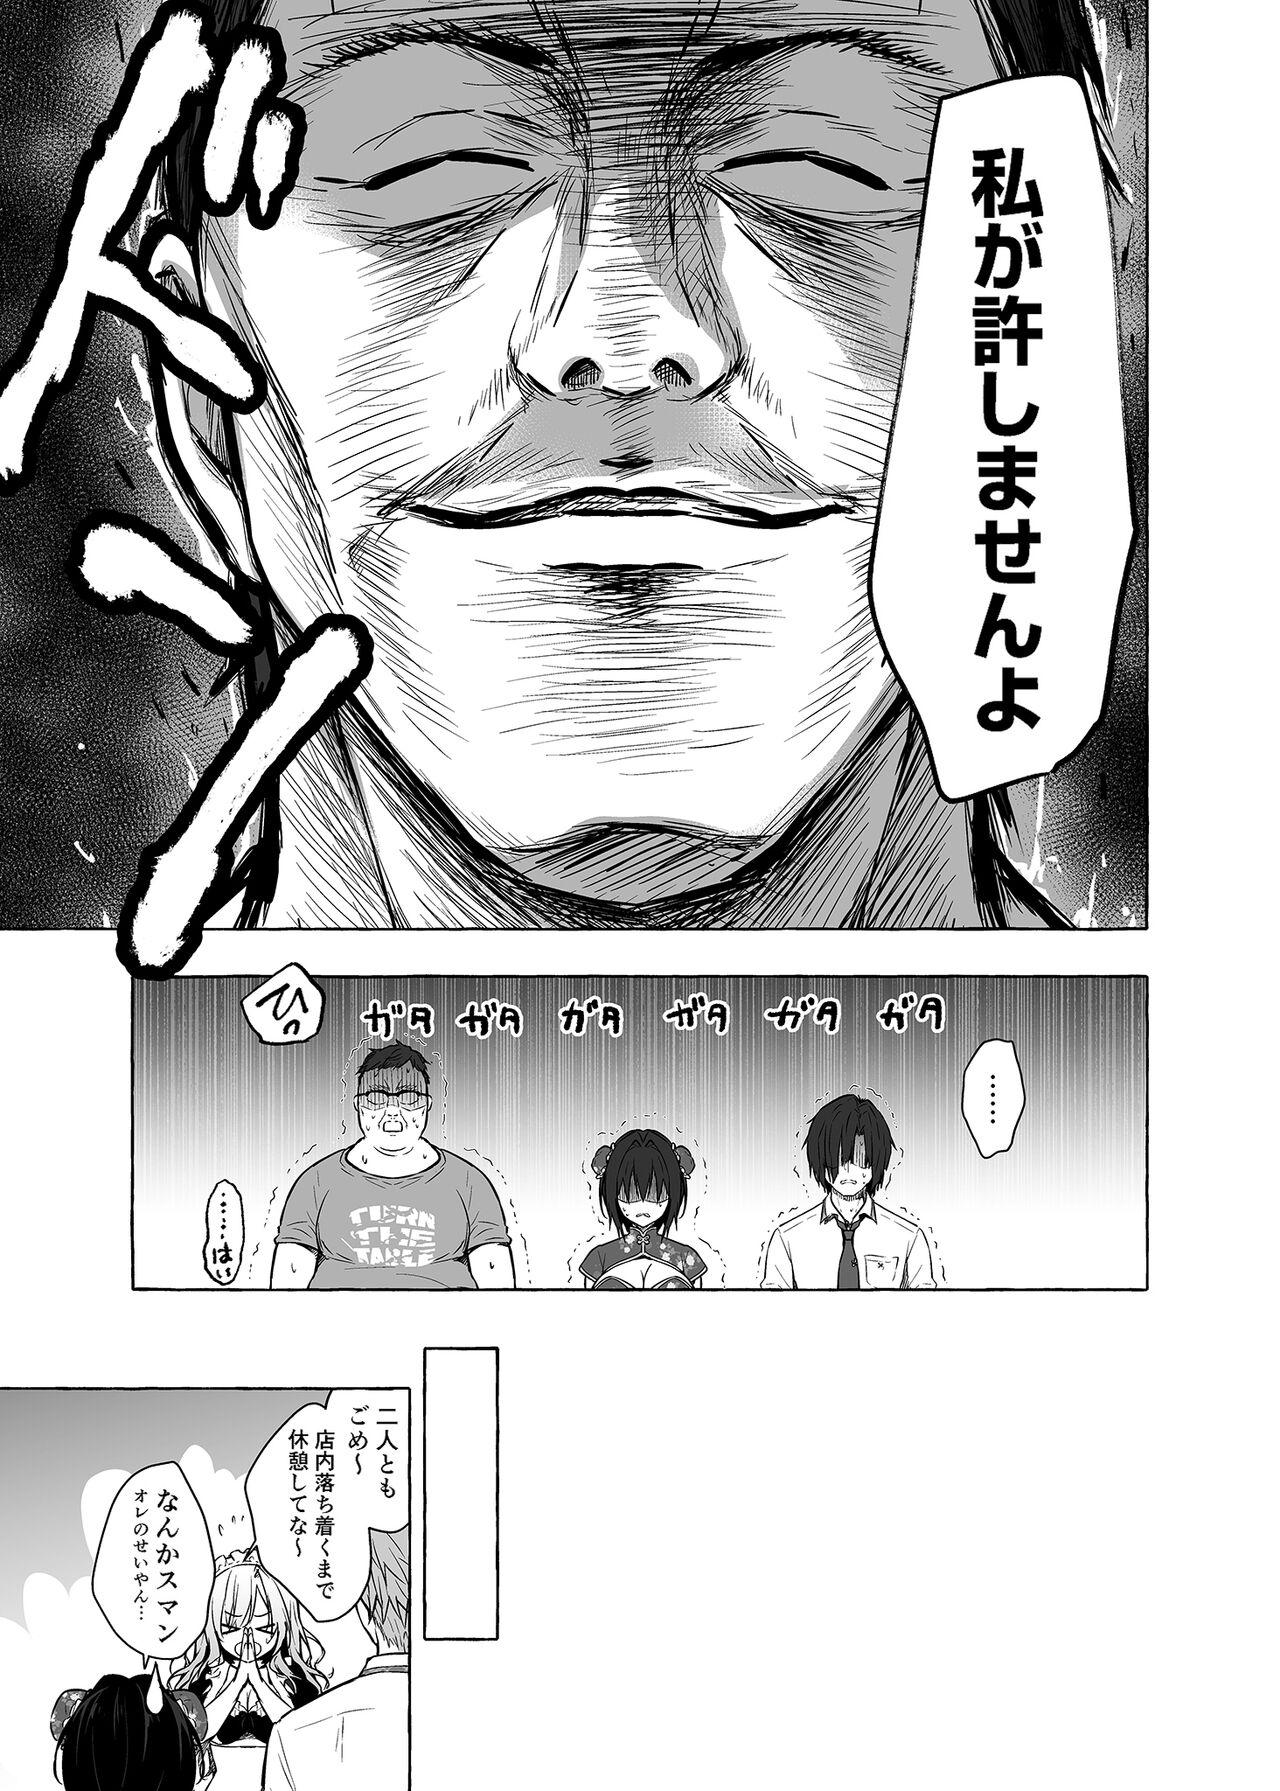 Rola TS Akira-kun no Seiseikatsu 6 - Original 4some - Page 10